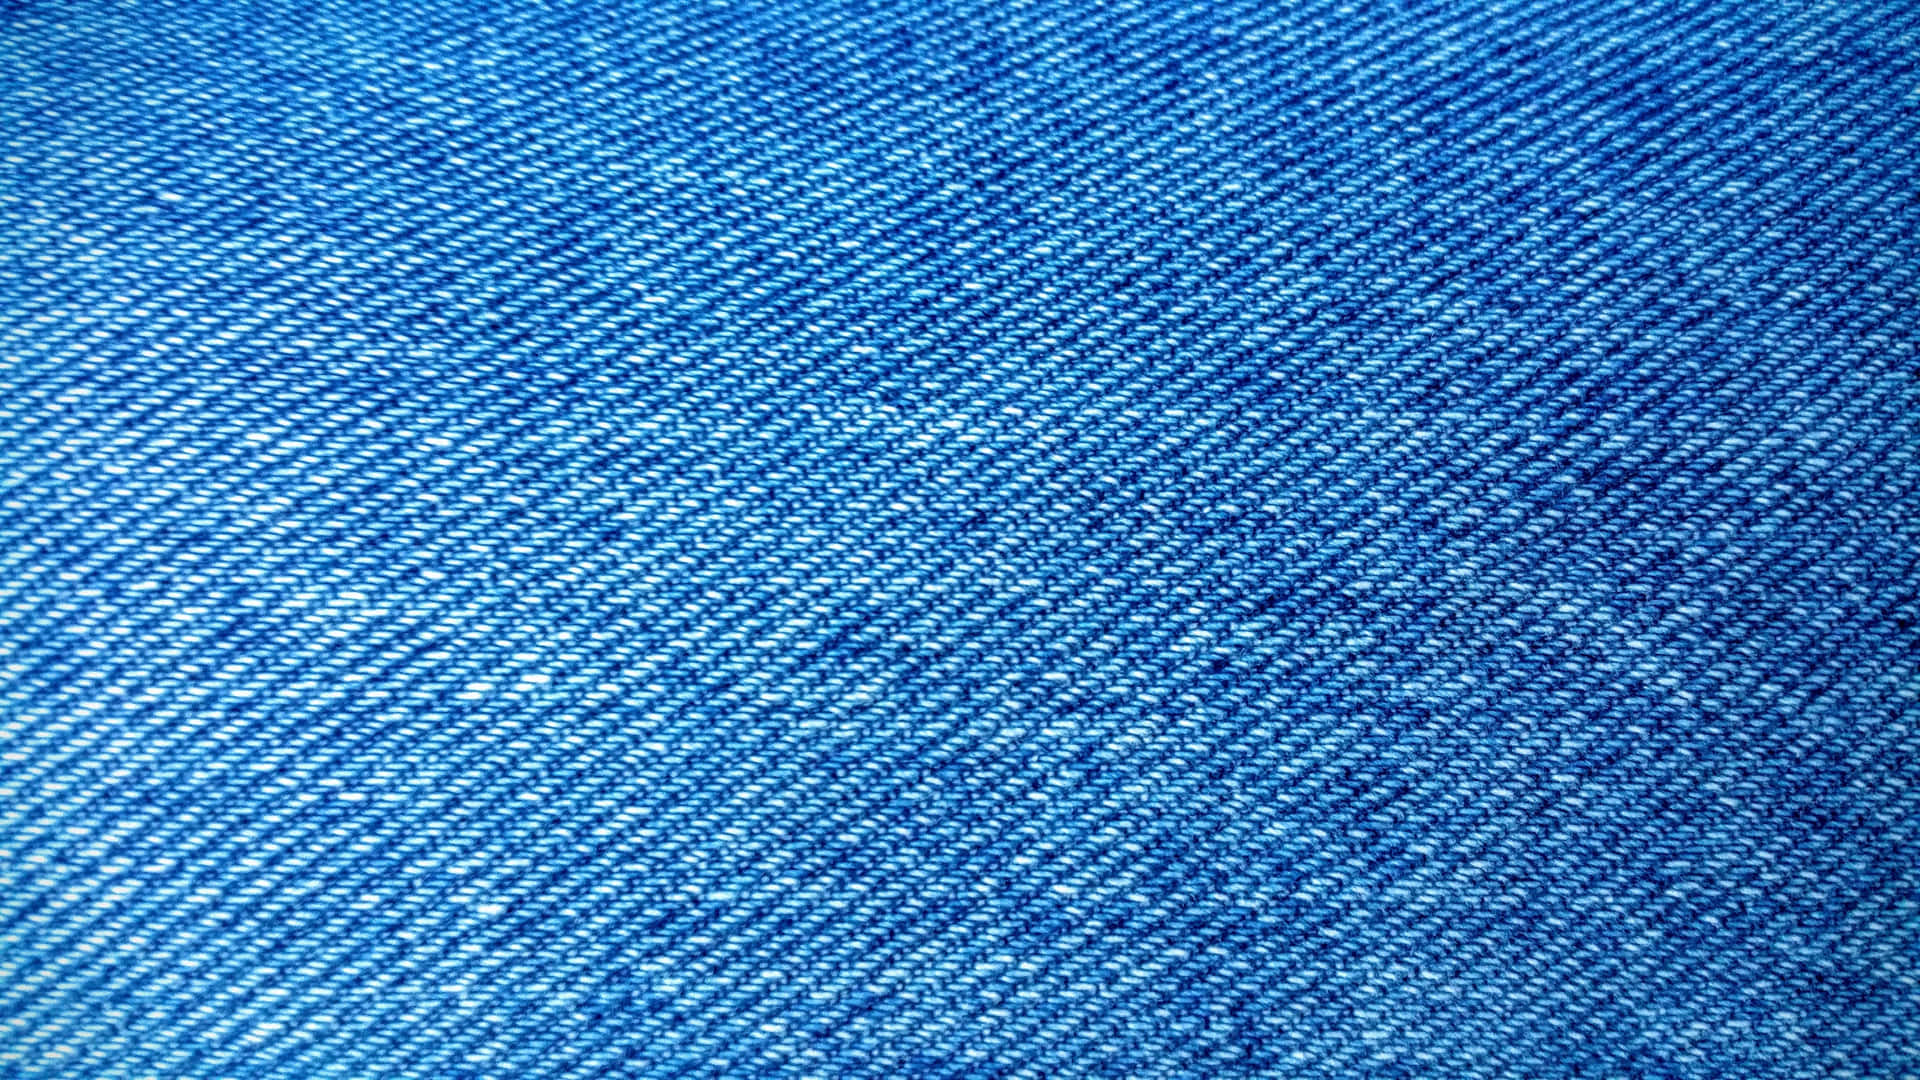 Fondode Textura De Tela De Mezclilla Azul